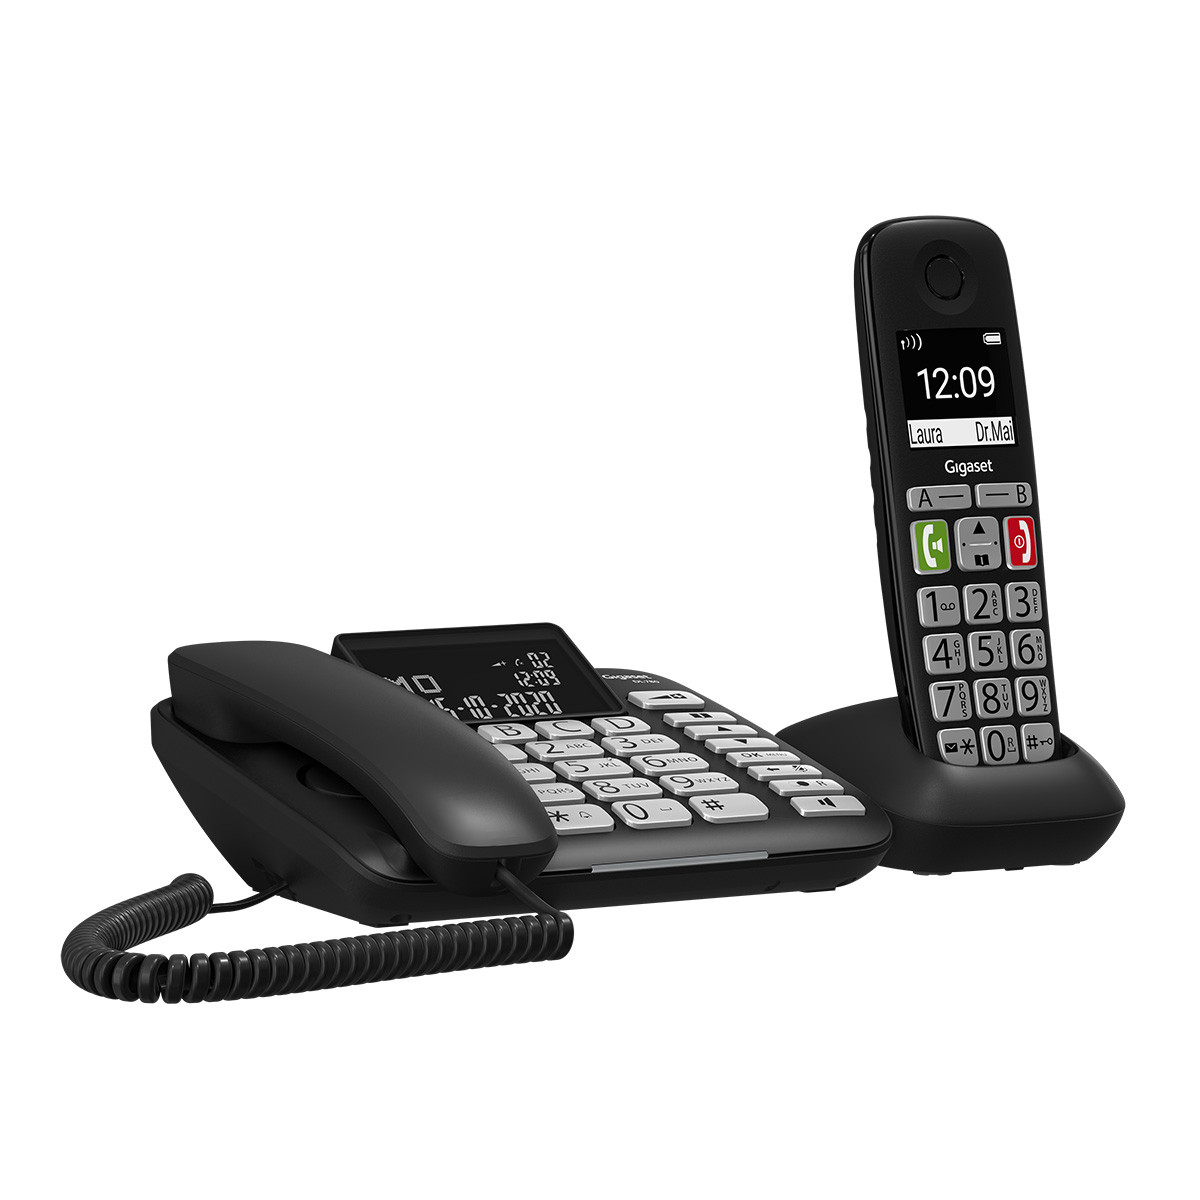 TELEFONO FIJO INALAMBRICO GIGASET E290 DUO TECLAS GRANDES